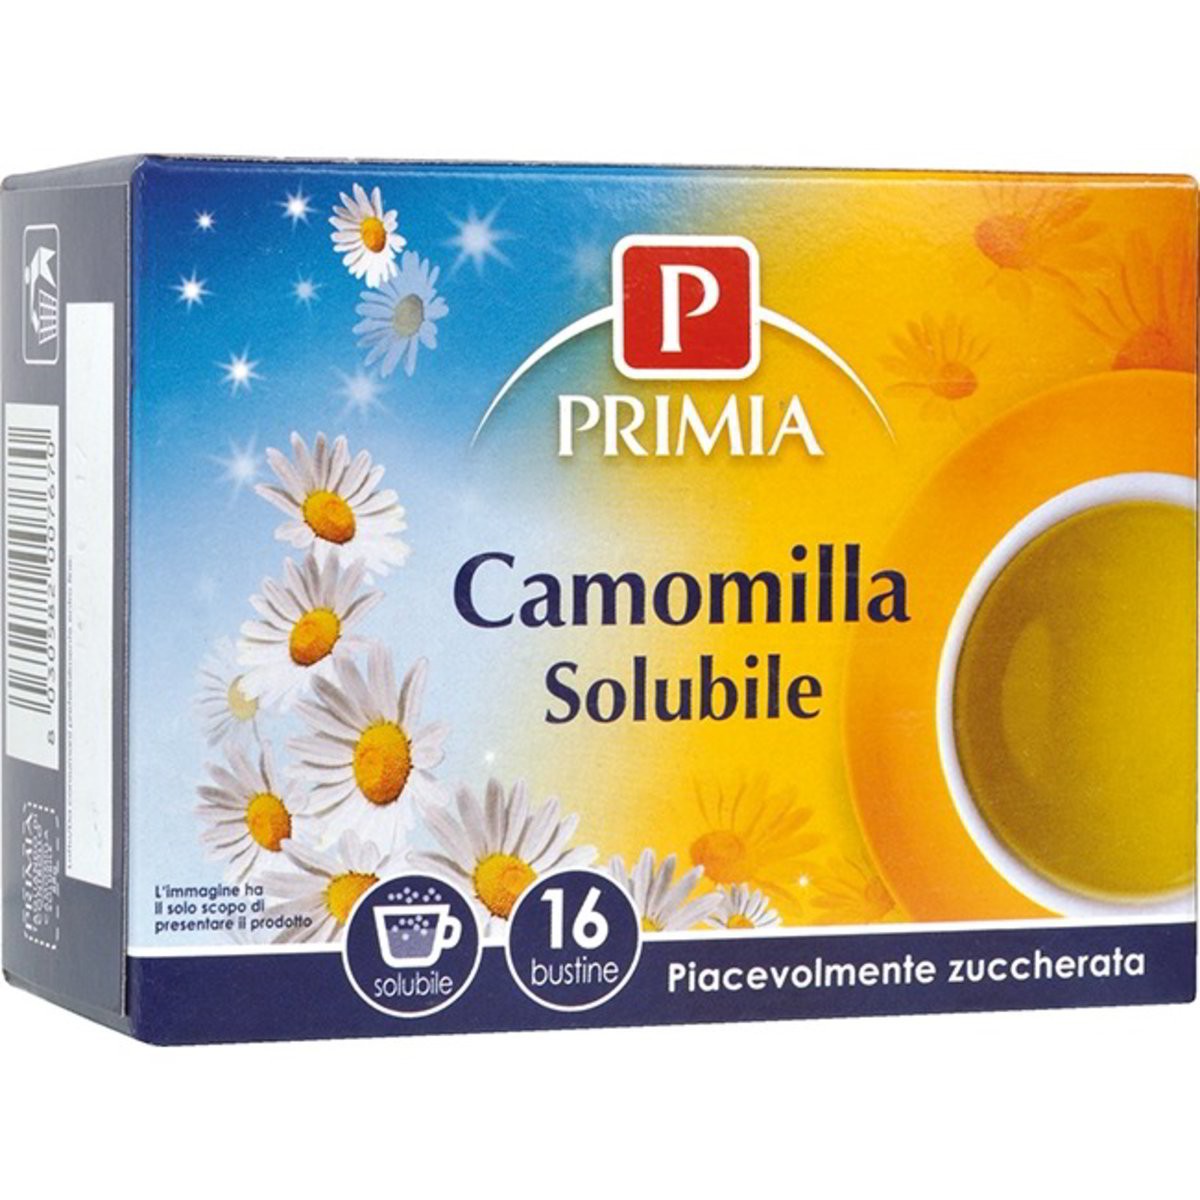 Primia Camomilla solubile